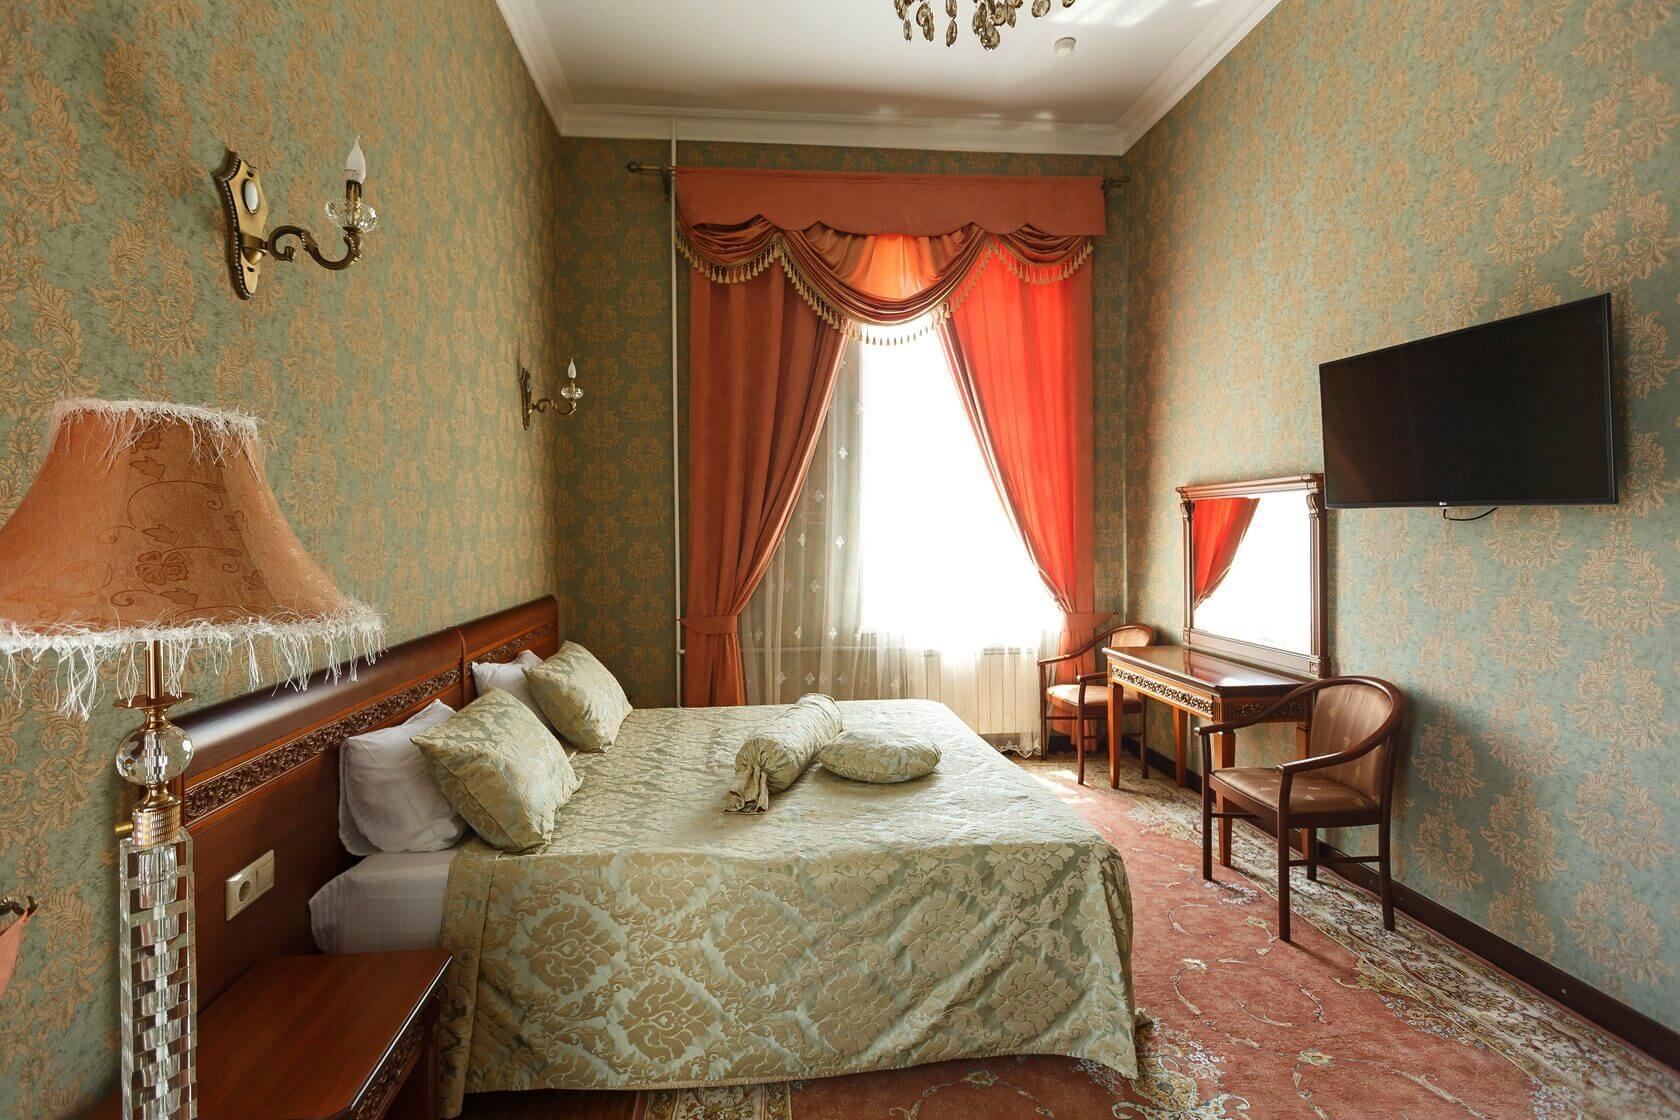 В номере: на окне - красивые портьеры, на полу - ковер, на тумбочке у кровати - лампа с красивым абажуром.